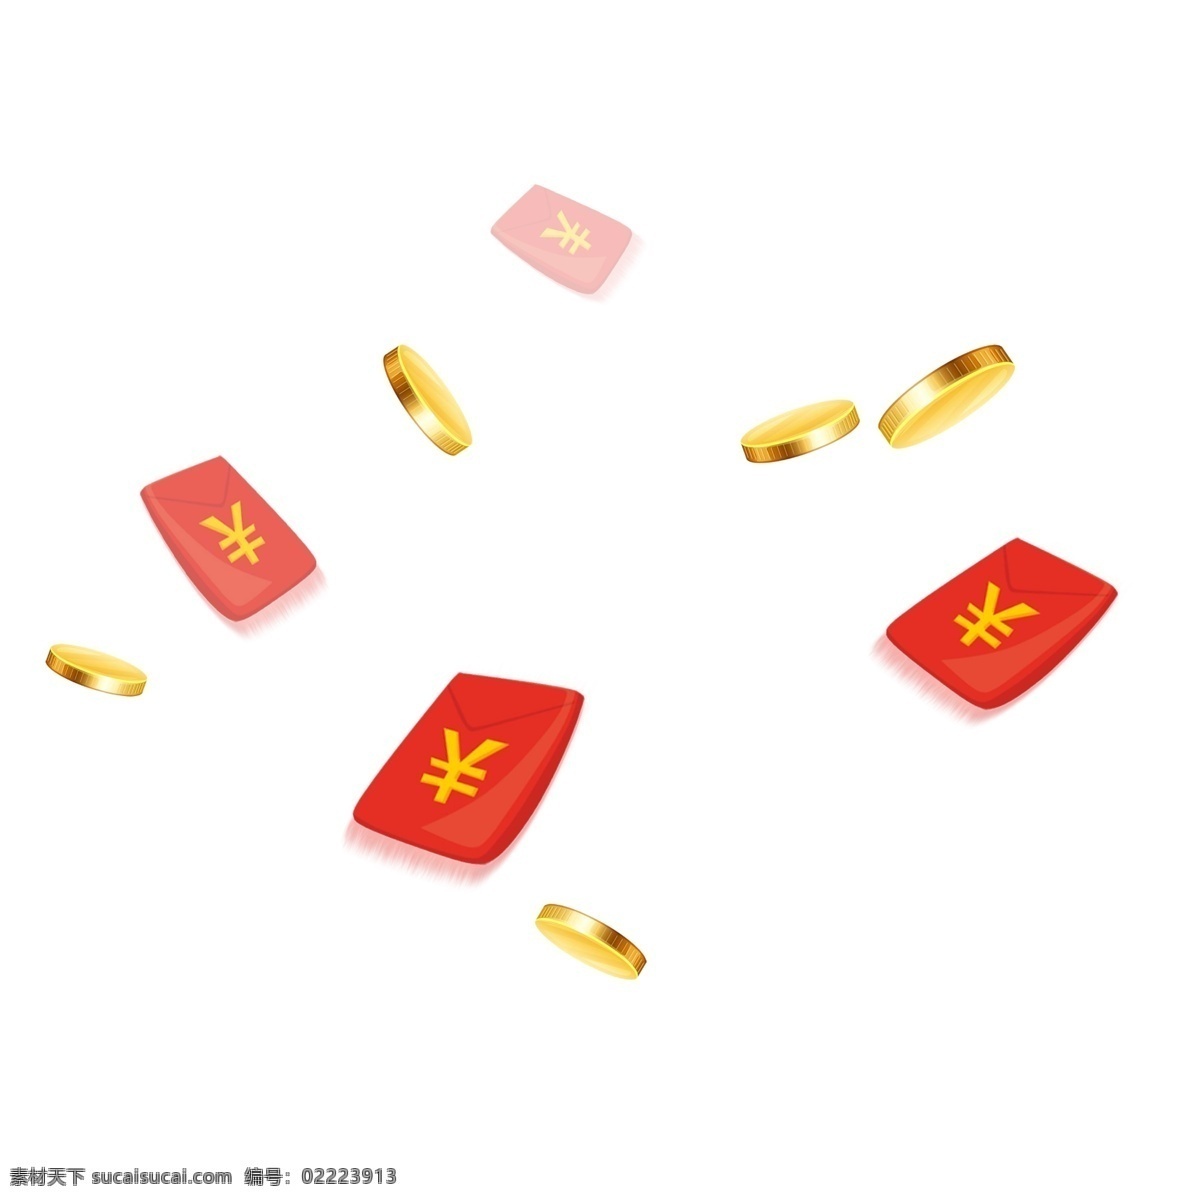 红色 红包 金币 元素 黄色金币 漂浮 奖券 压岁钱 钱 过年 年节装饰 金黄色金币